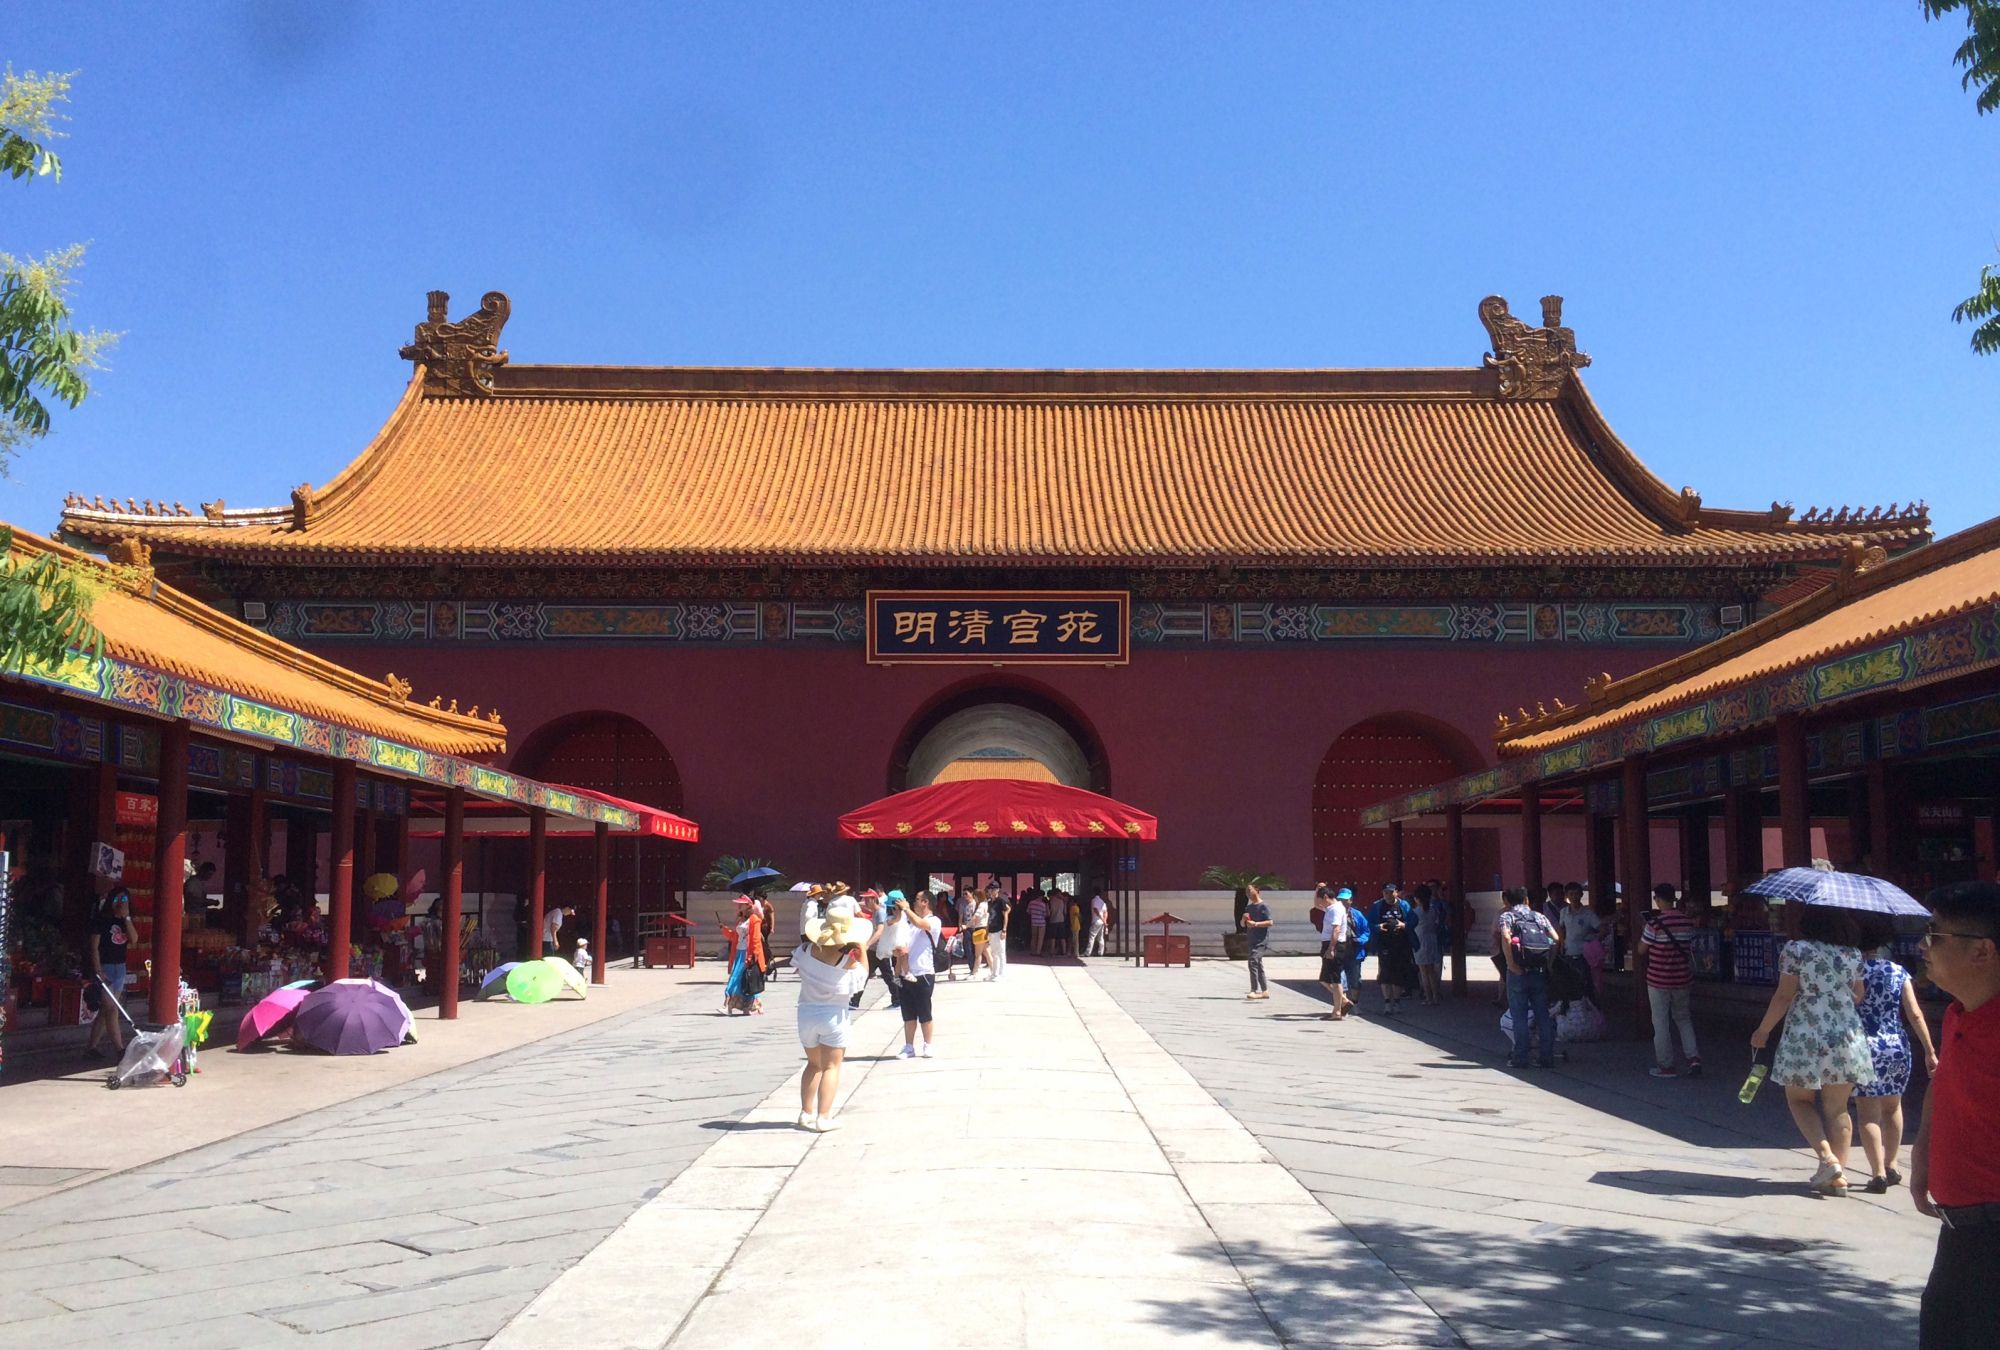 看了这么多年宫廷剧，原来不是北京故宫拍的，而是在这个“故宫”